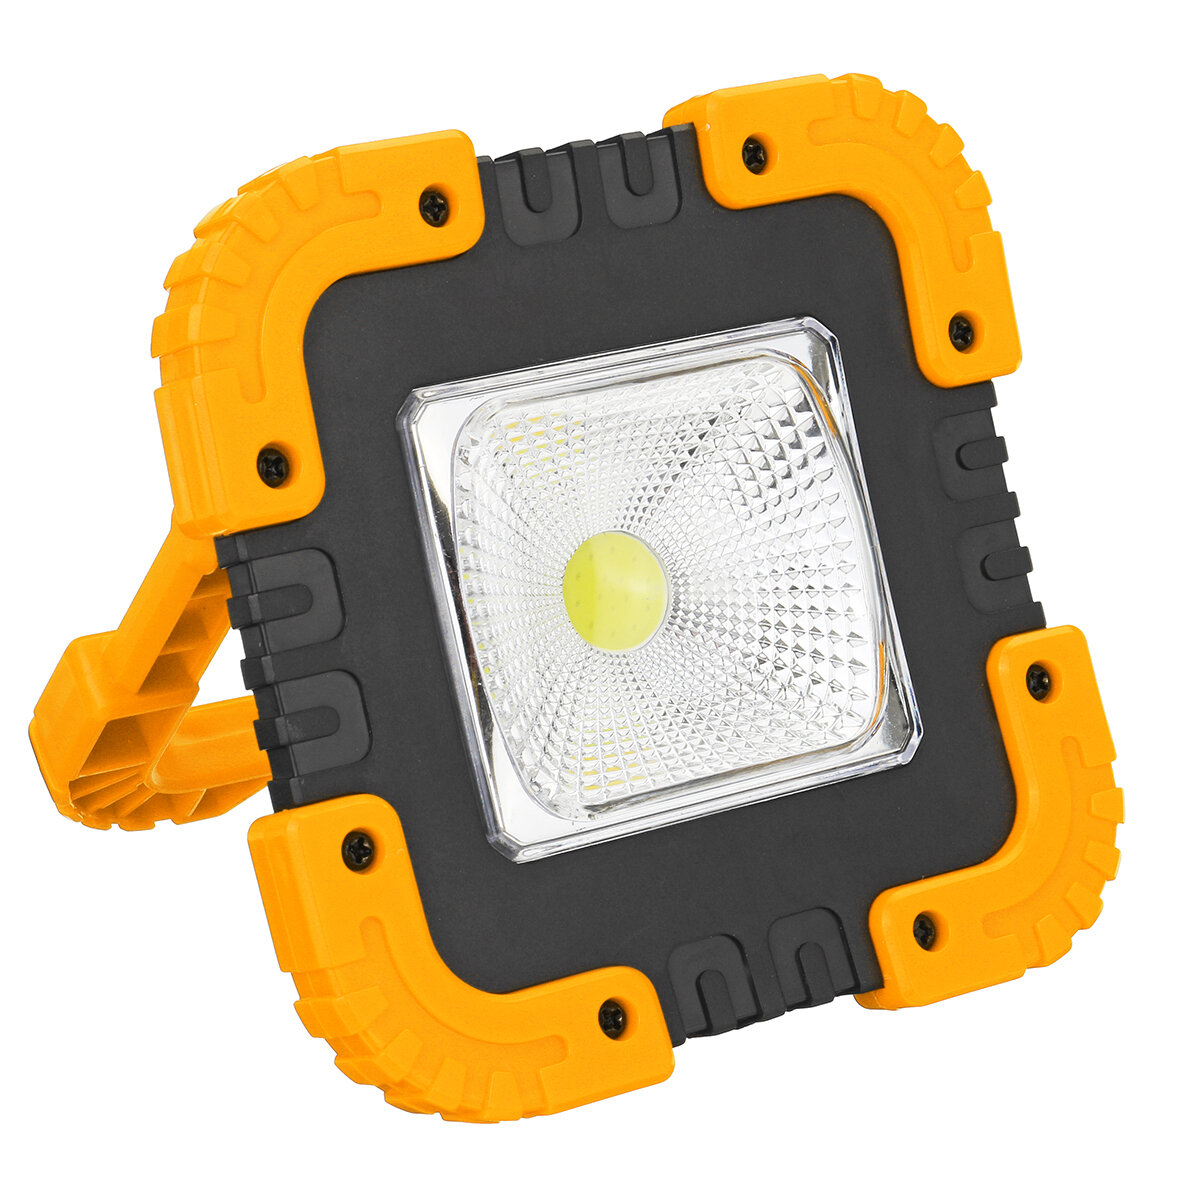 Portable 20W Solaire LED Lampe de Travail COB Lampe de Camping USB Rechargeable Flood Spot Lampe Main Lumière